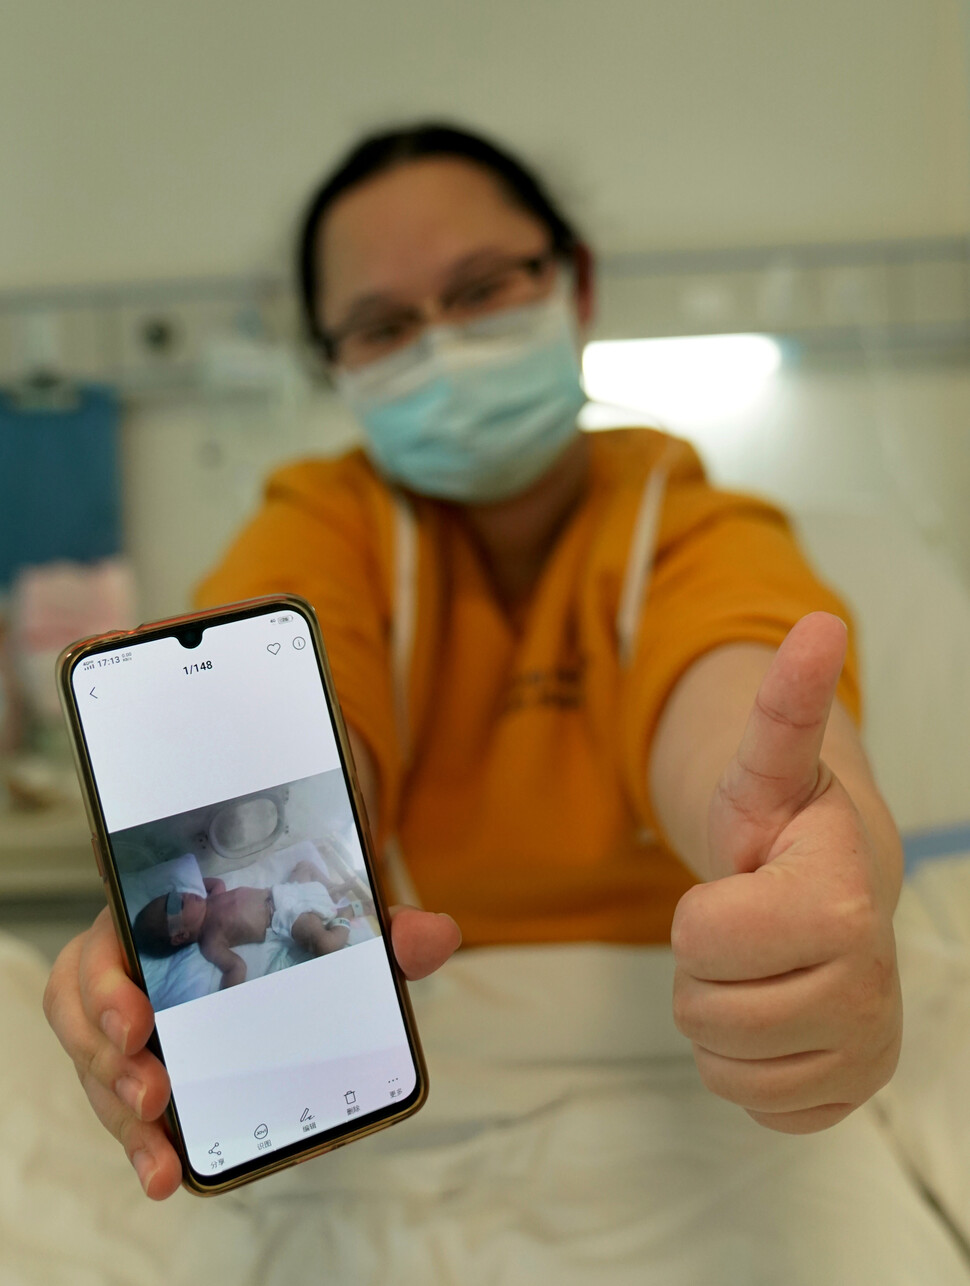 2월18일 우한의 한 병원에서 코로나19로 투병 중인 한 여성이 병상에서 낳은 아기 사진을 보여주고 있다. 아기는 건강 상태가 양호하다.